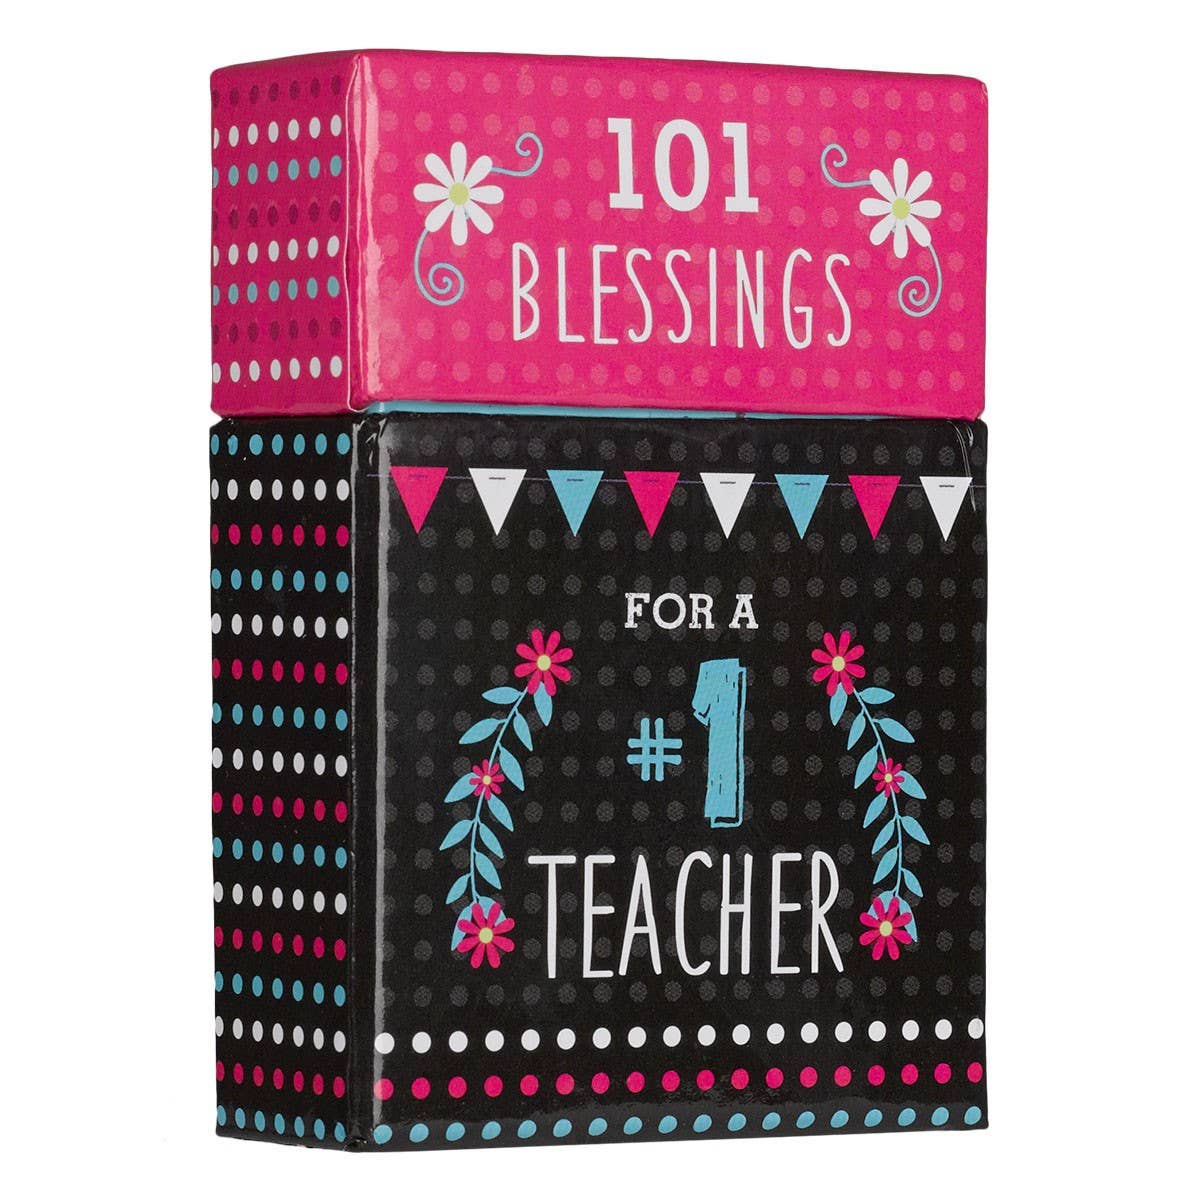 101 Blessings for a #1 Teacher Box of Blessings